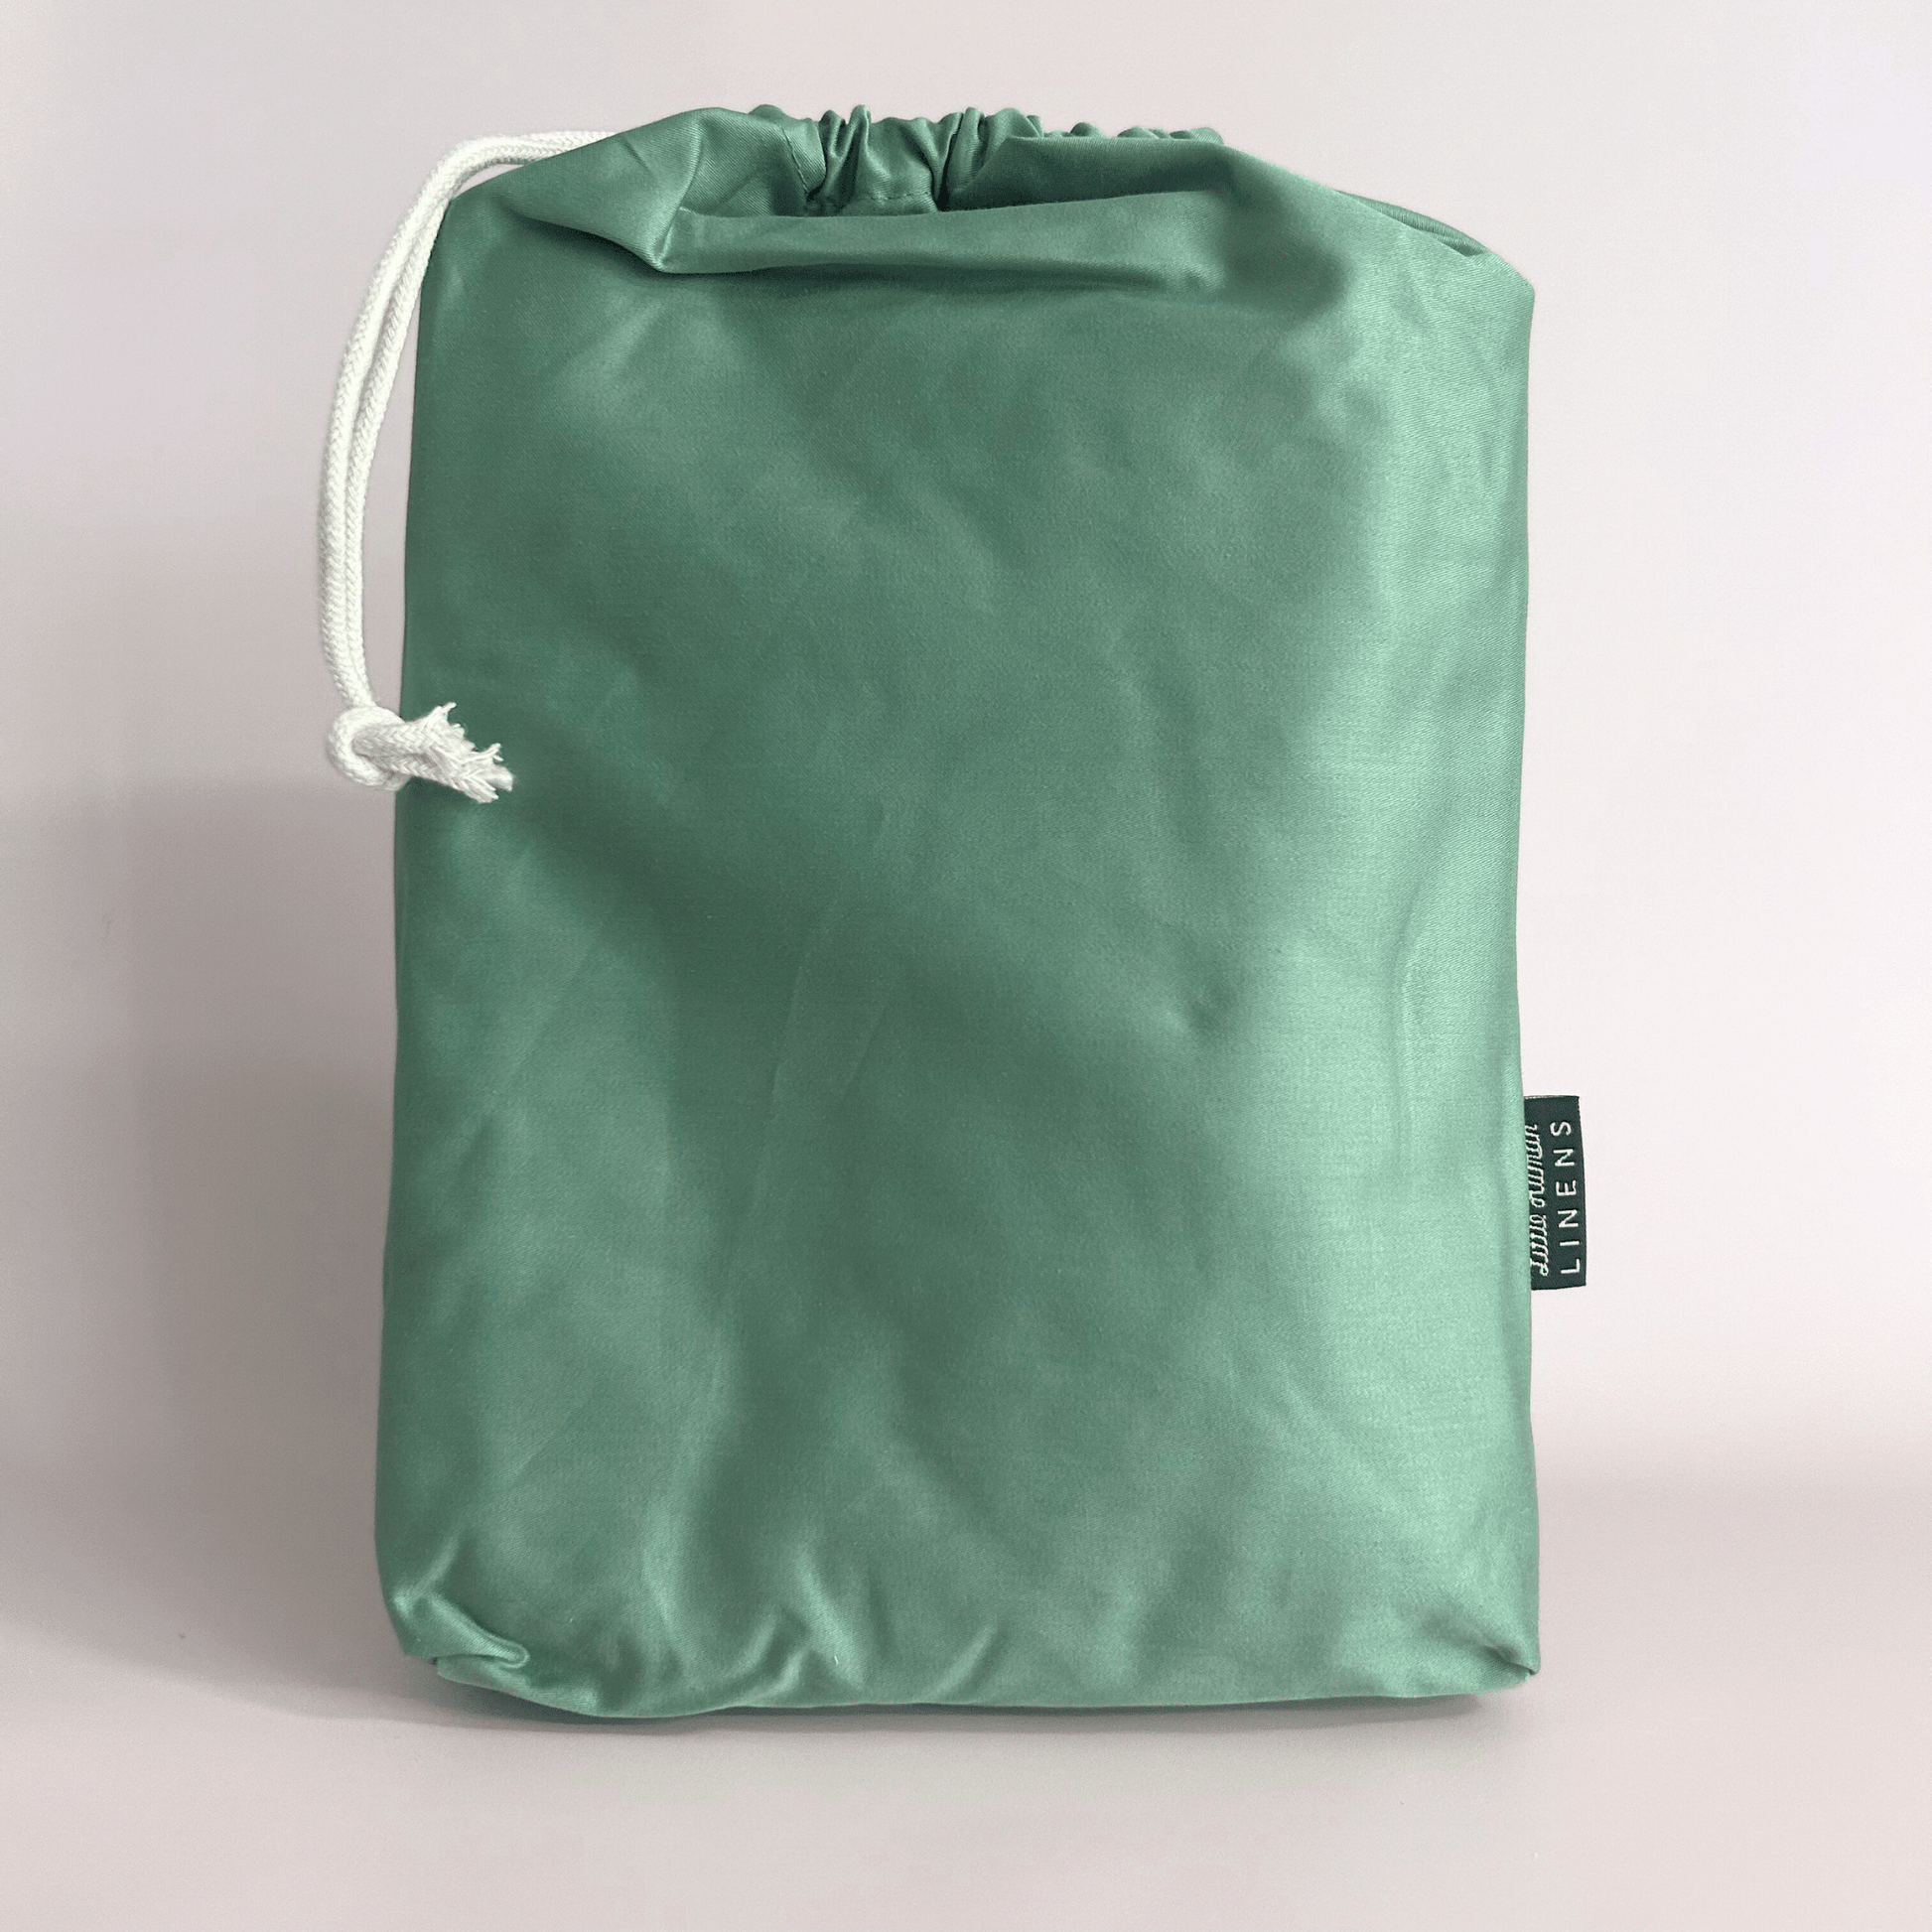 Cot Waterproof Sheet - Sea Green - Little Human Linens